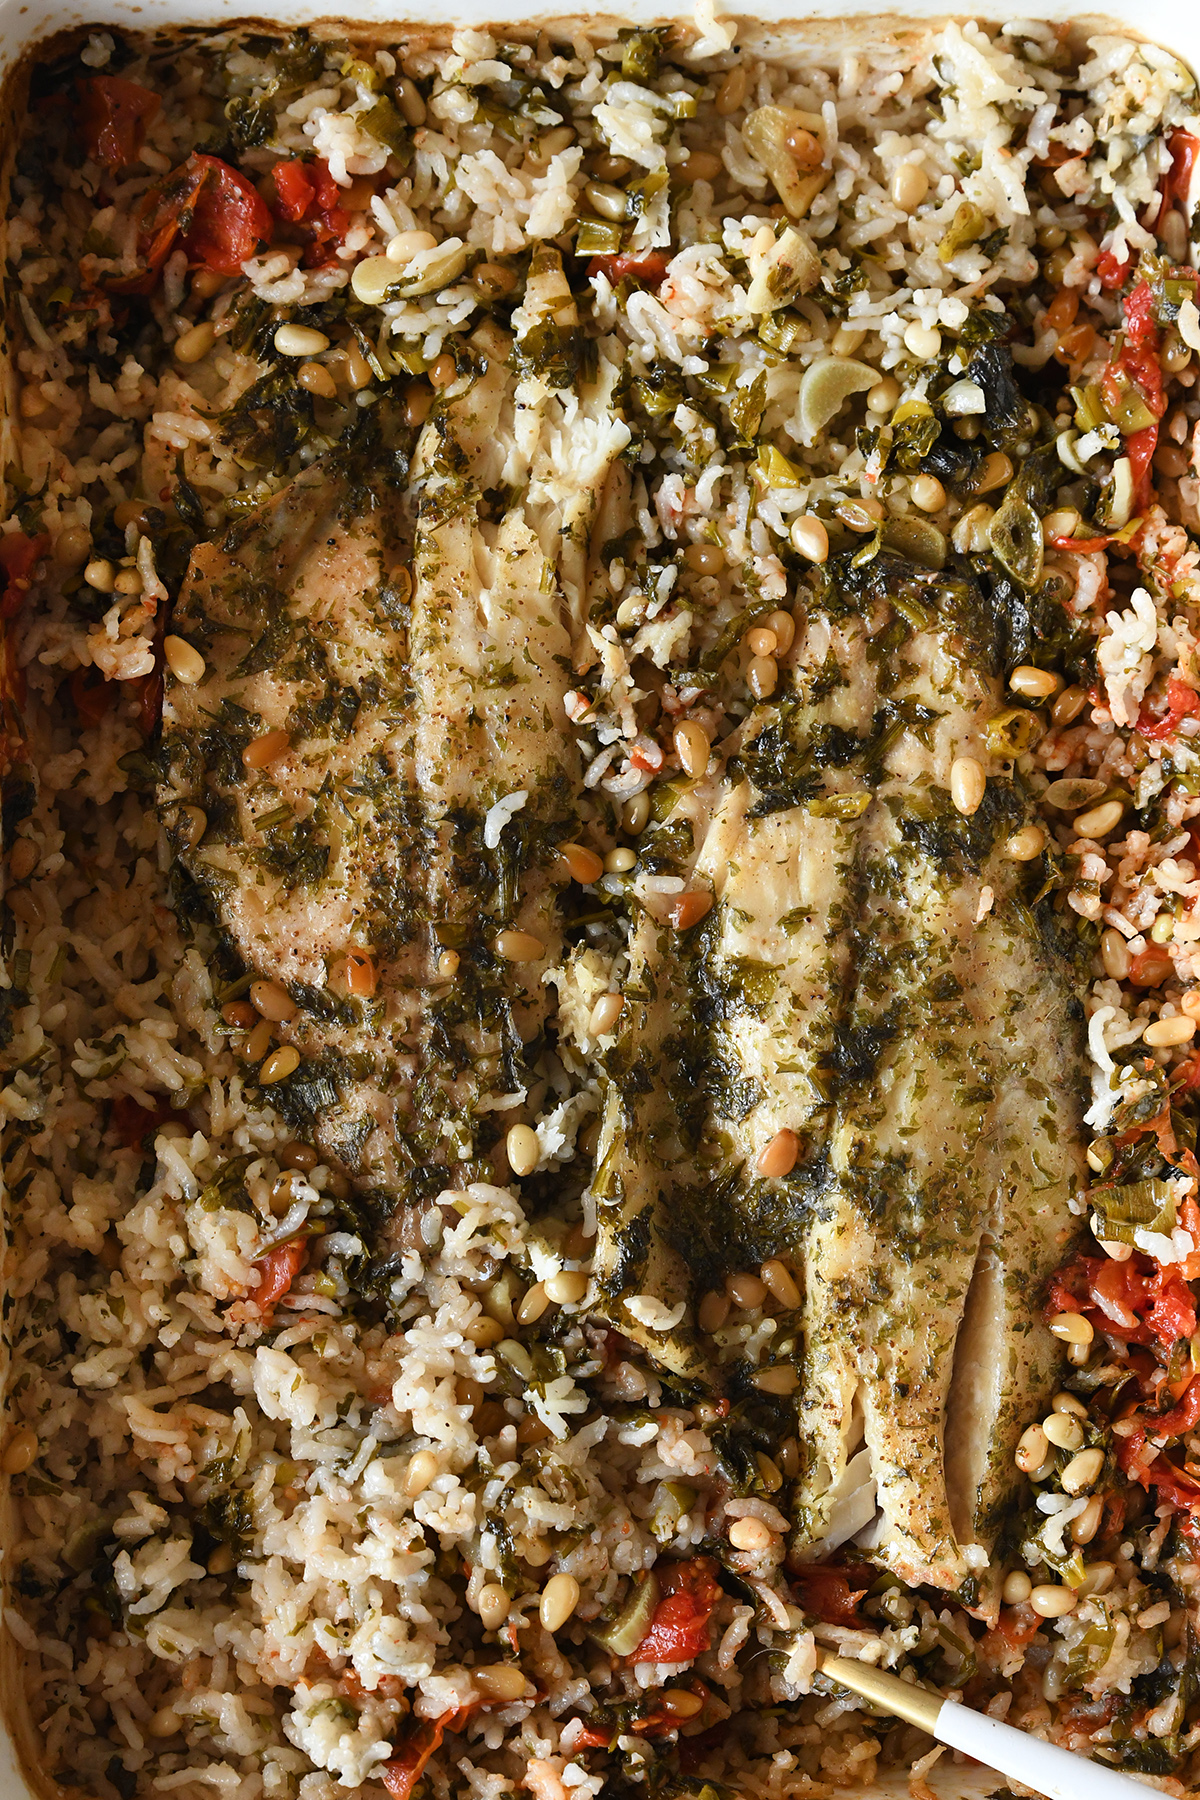 ארוחה בסיר אחד - אורז ירוק ופילה דג בתנור